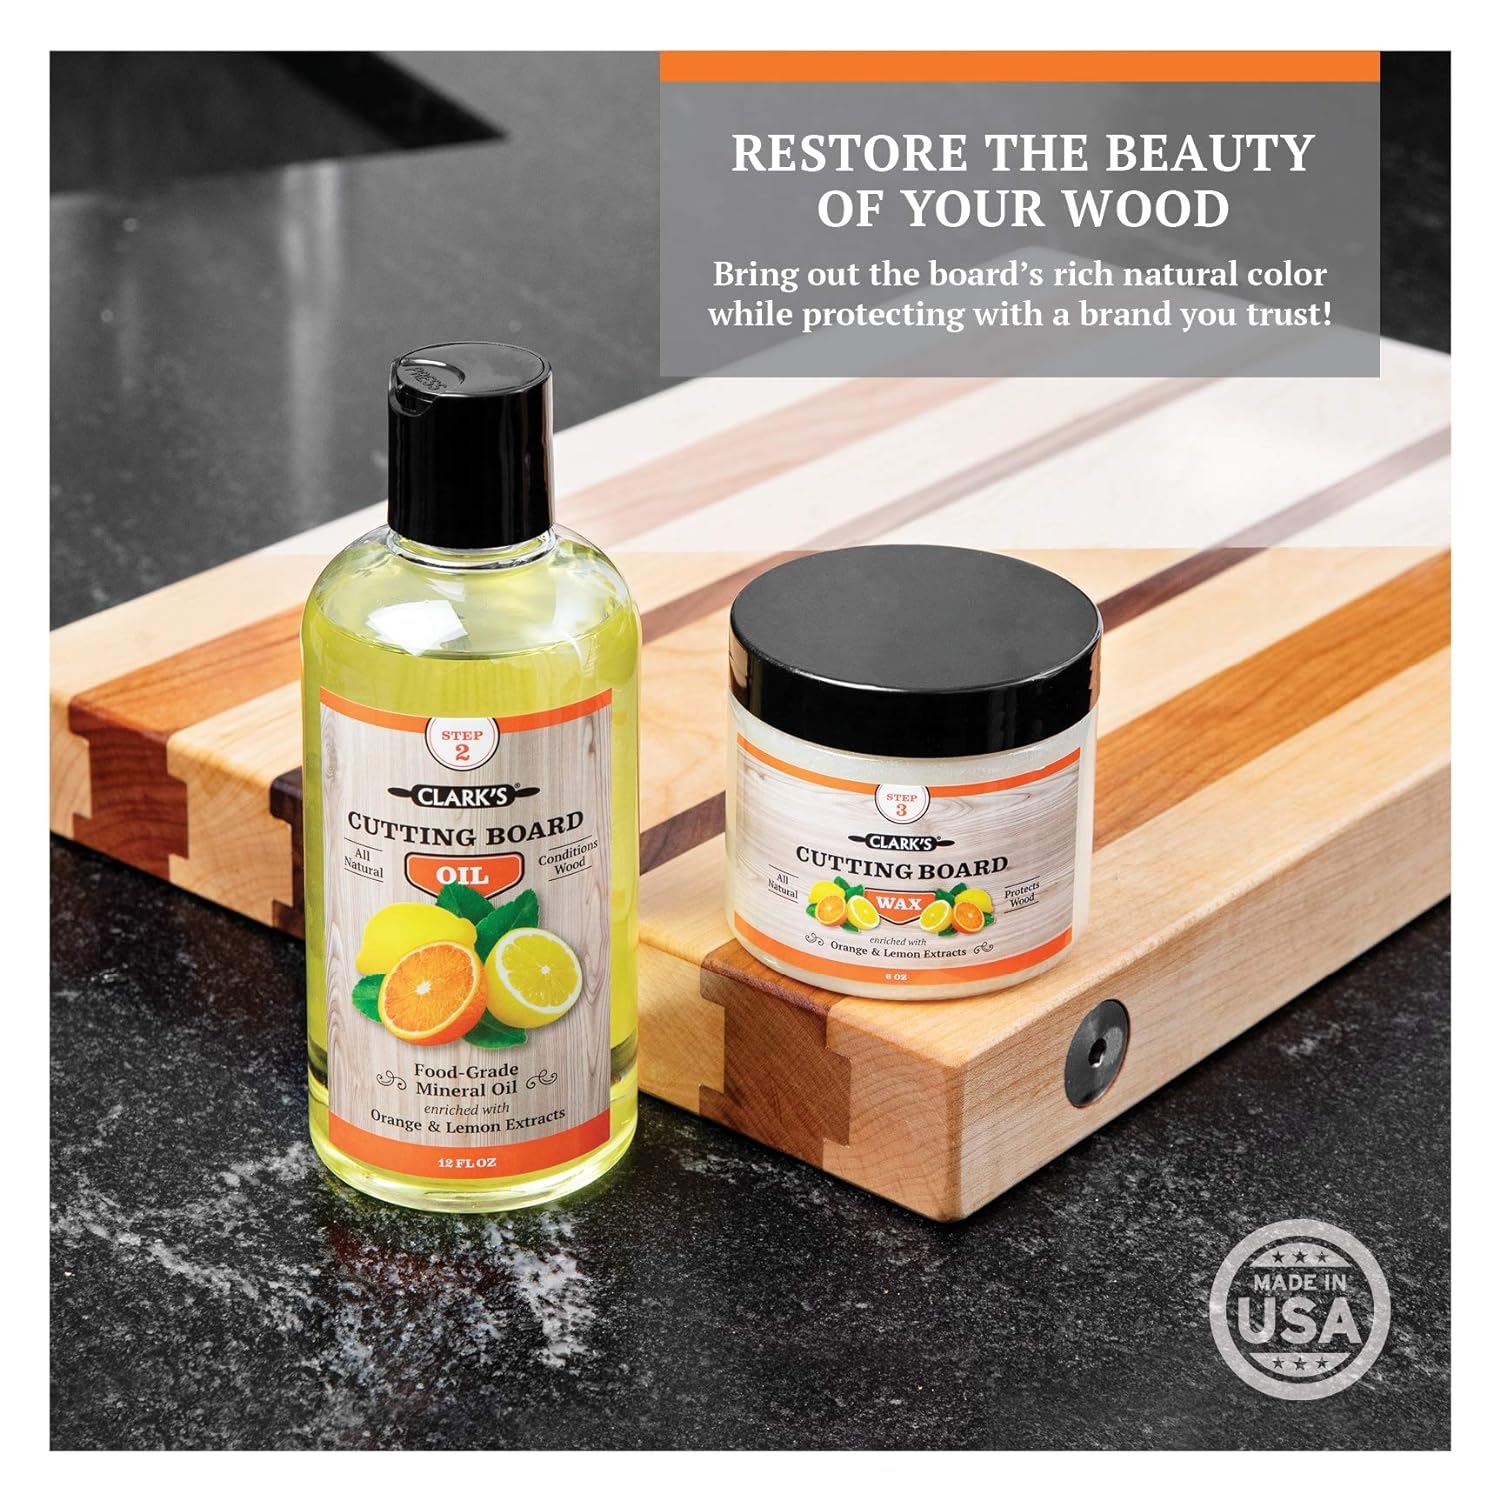 CLARK'S Cutting Board Oil & Wax (2 Bottle Set) | Includes CLARK'S Cutting Board Oil (12oz) & CLARK'S Finish Wax (6oz) | Orange & Lemon Scent